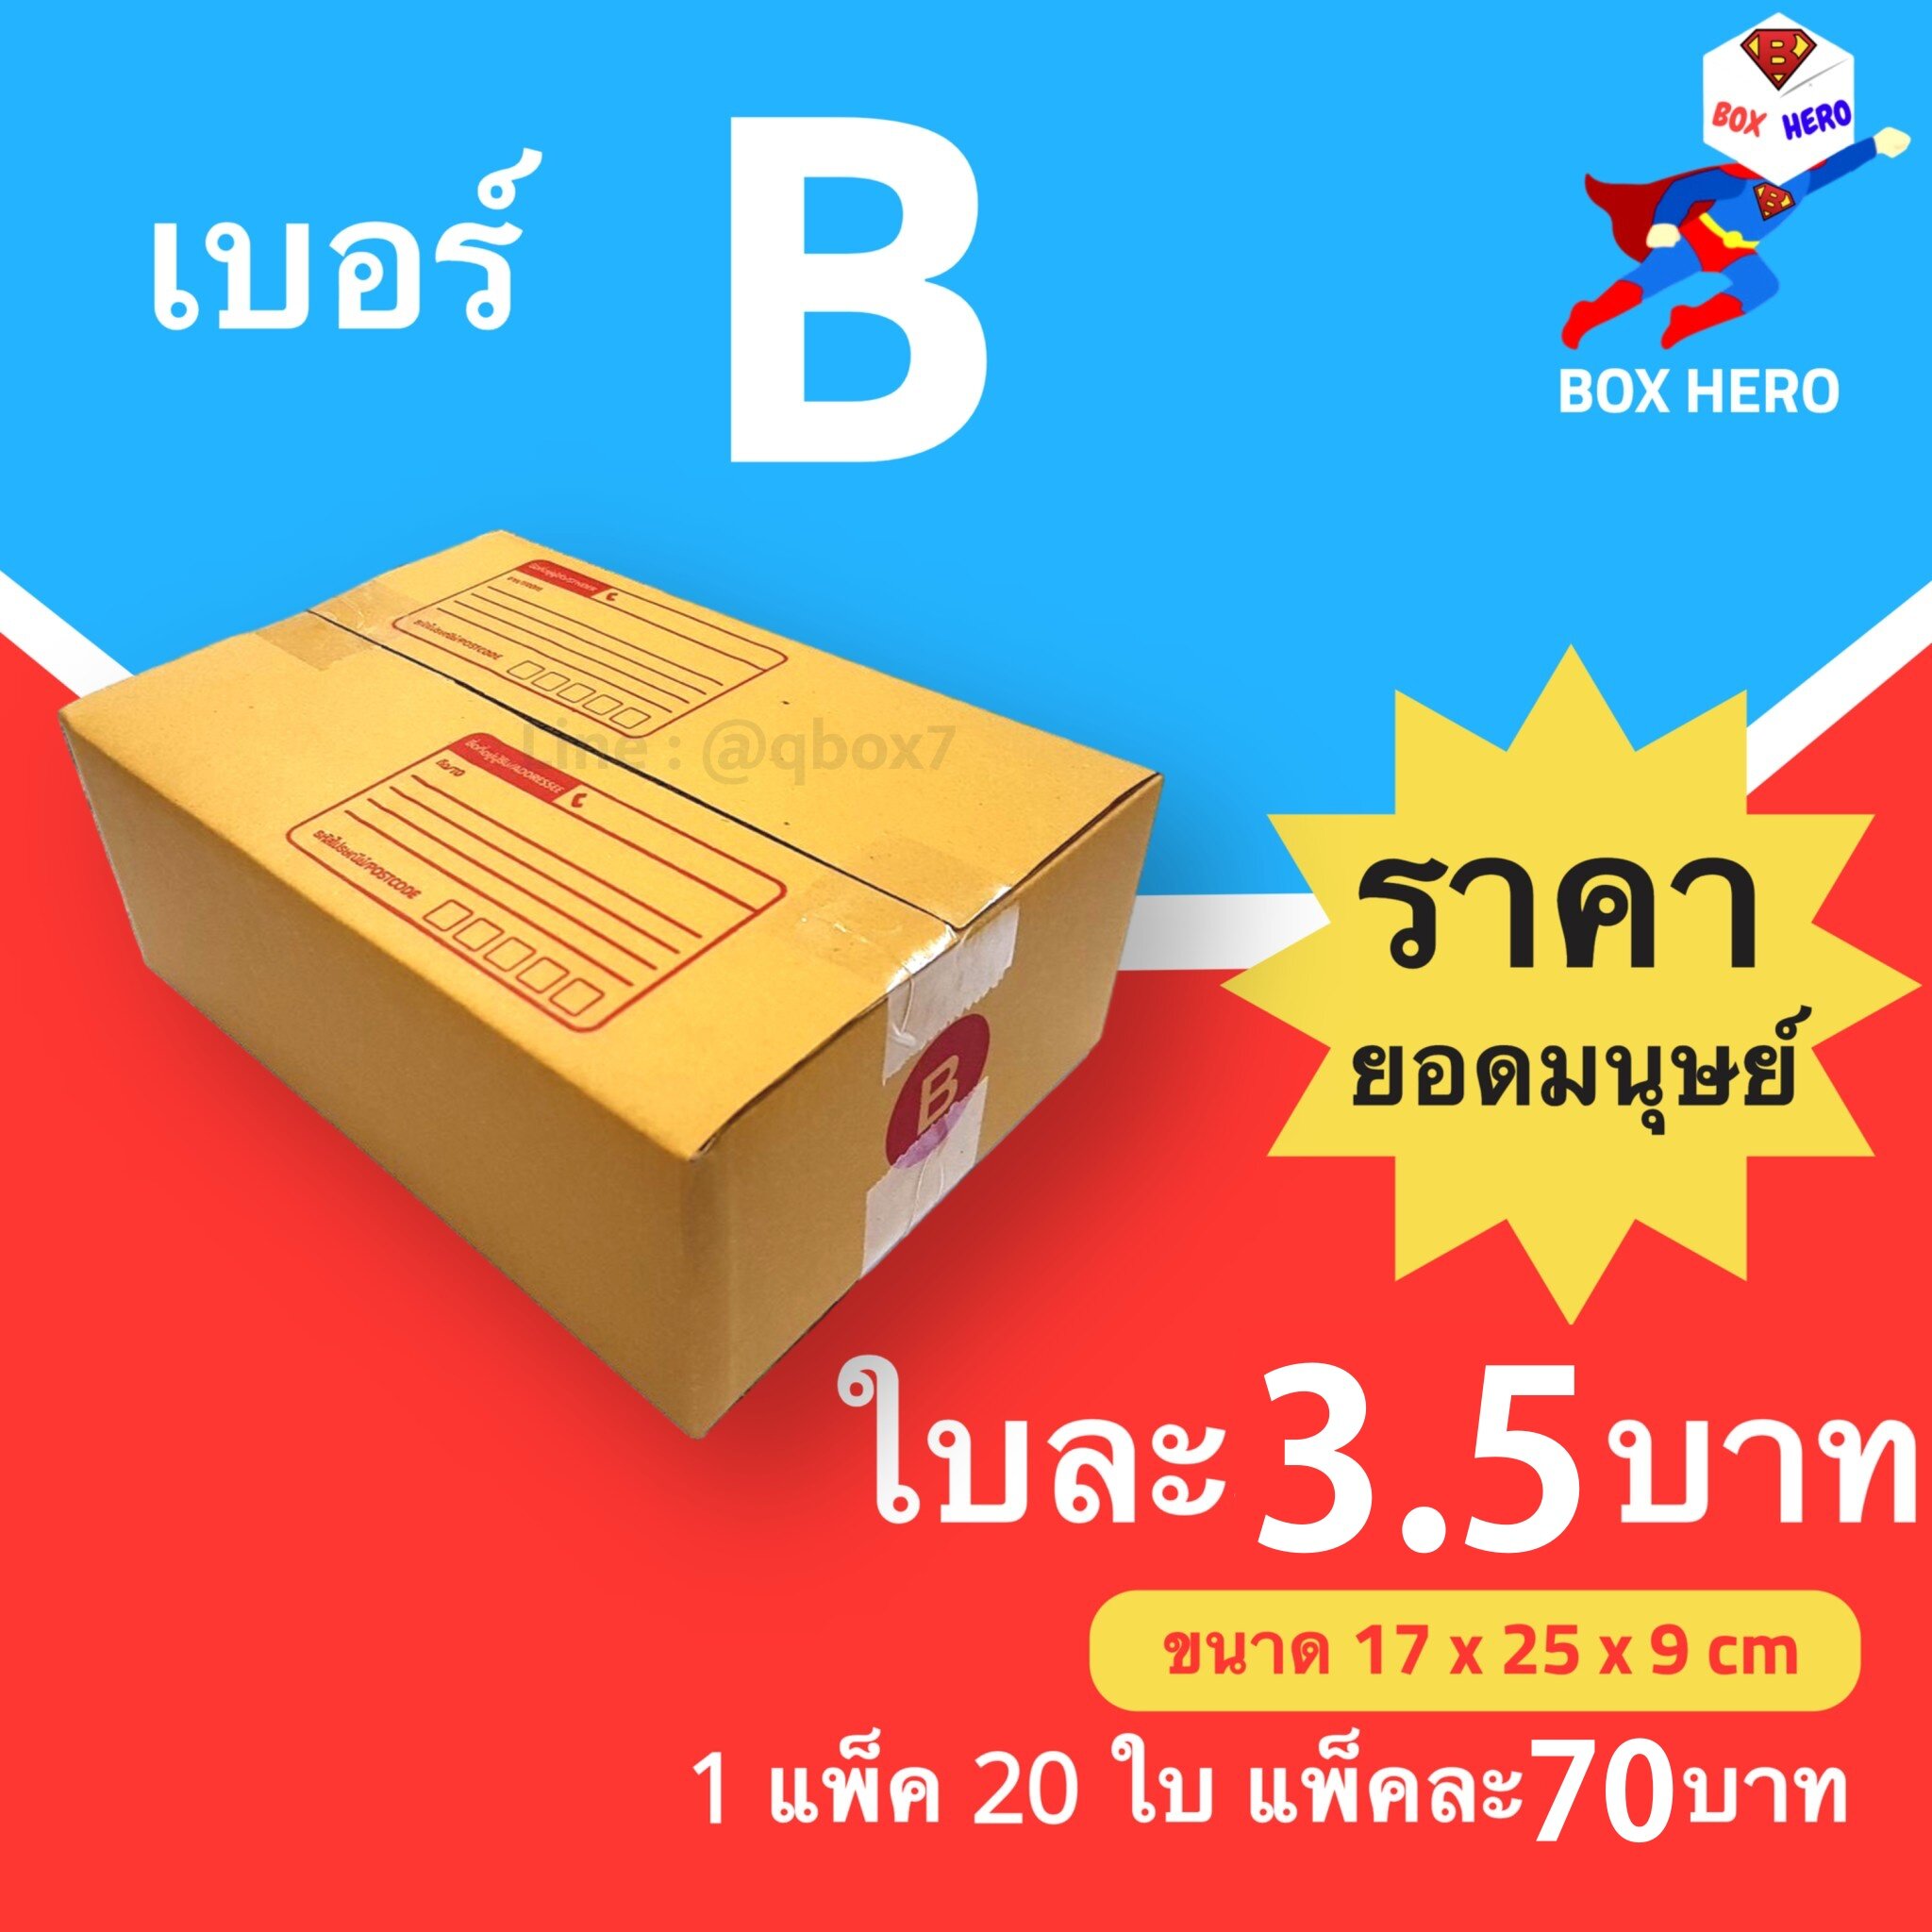 รูปภาพของ BoxHero กล่องไปรษณีย์เบอร์ B มีพิมพ์จ่าหน้า กล่องพัสดุ (20 ใบ 70 บาท)